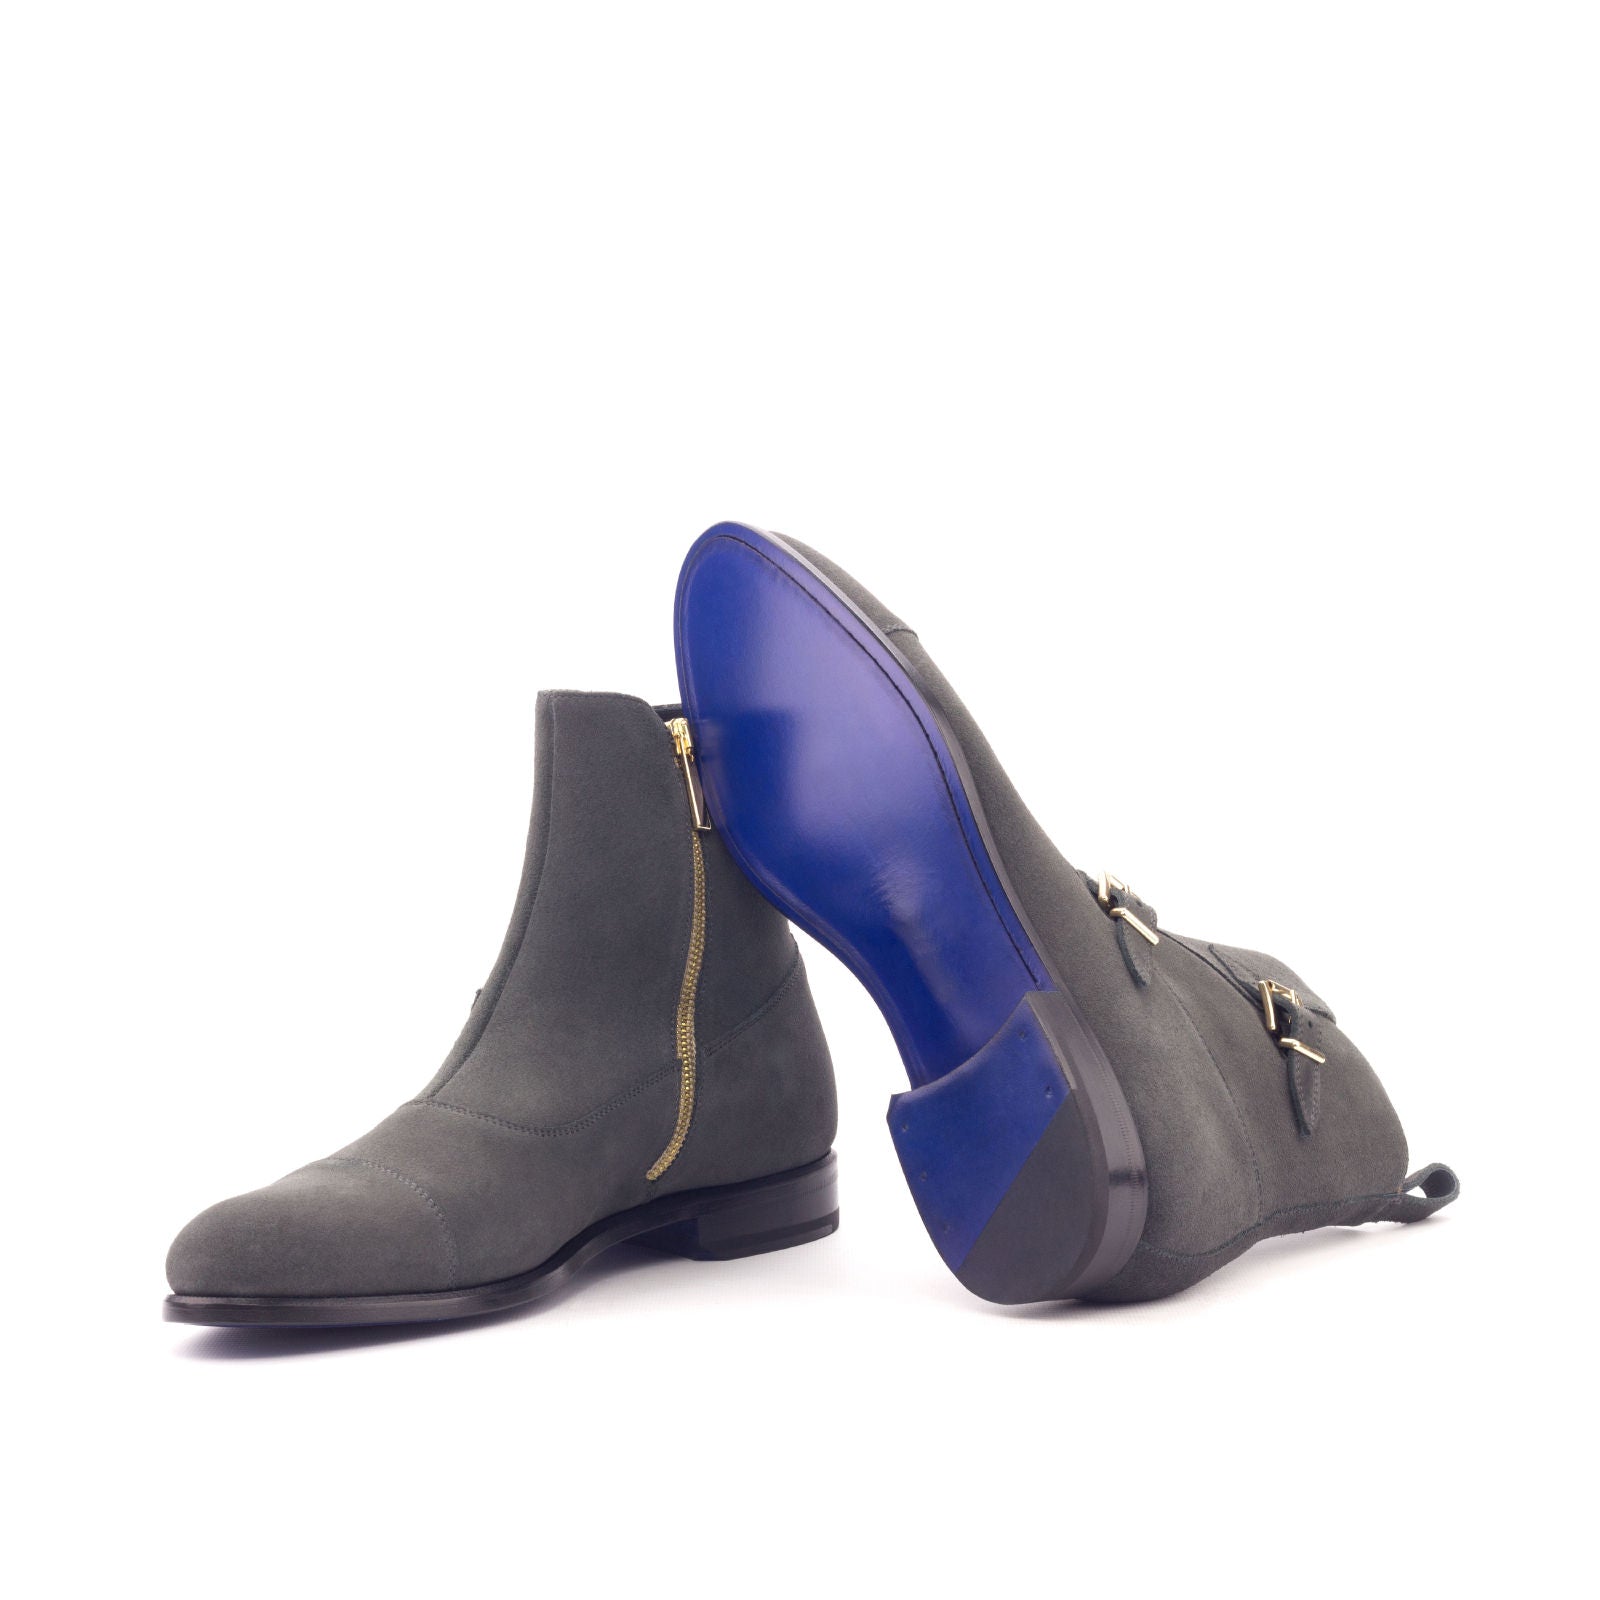 Men's Double Monk Boots in Grey Lux Suede - Maison de Kingsley Couture Harmonie et Fureur Spain